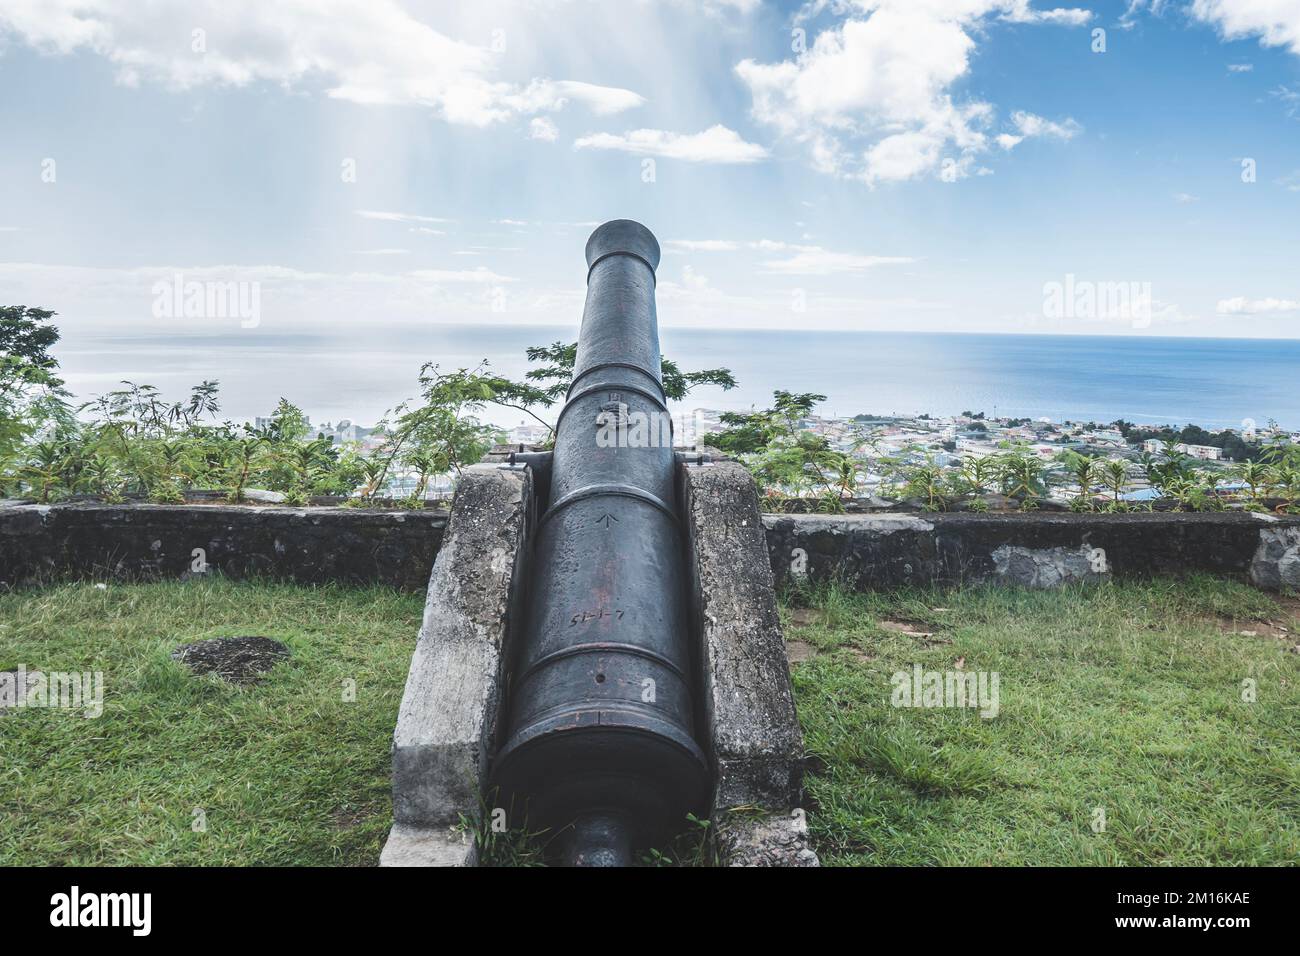 Vieux canon en fer noir vintage face à l'océan Atlantique dans la capitale de la Dominique, Roseau Banque D'Images